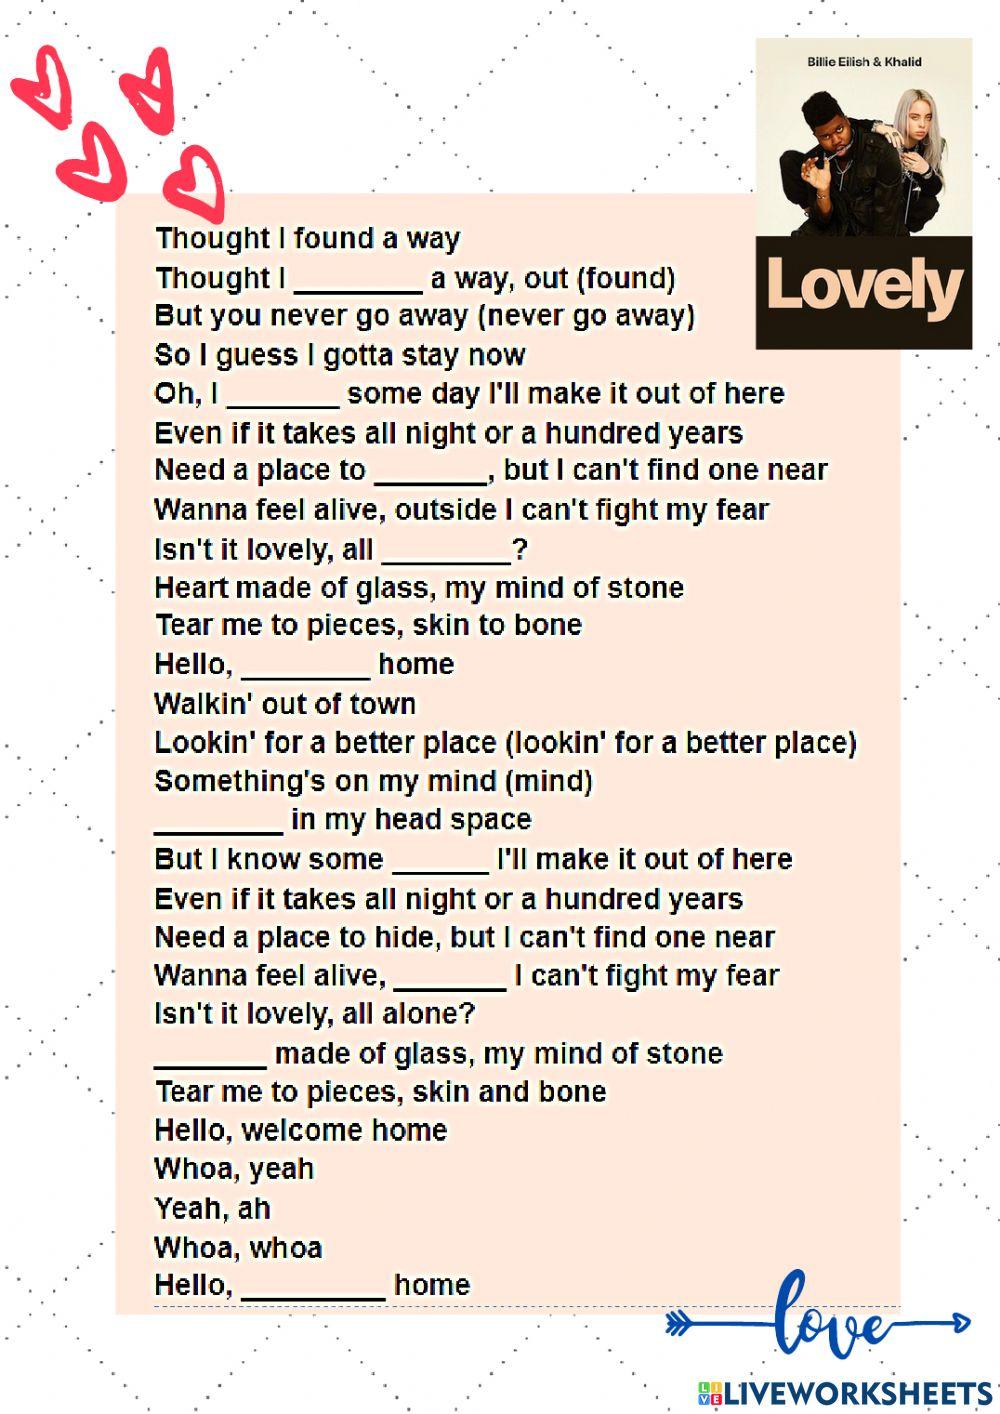 lovely (with khalid)#lyrics #musiclyrics #foryou #goodsong #lovely #so